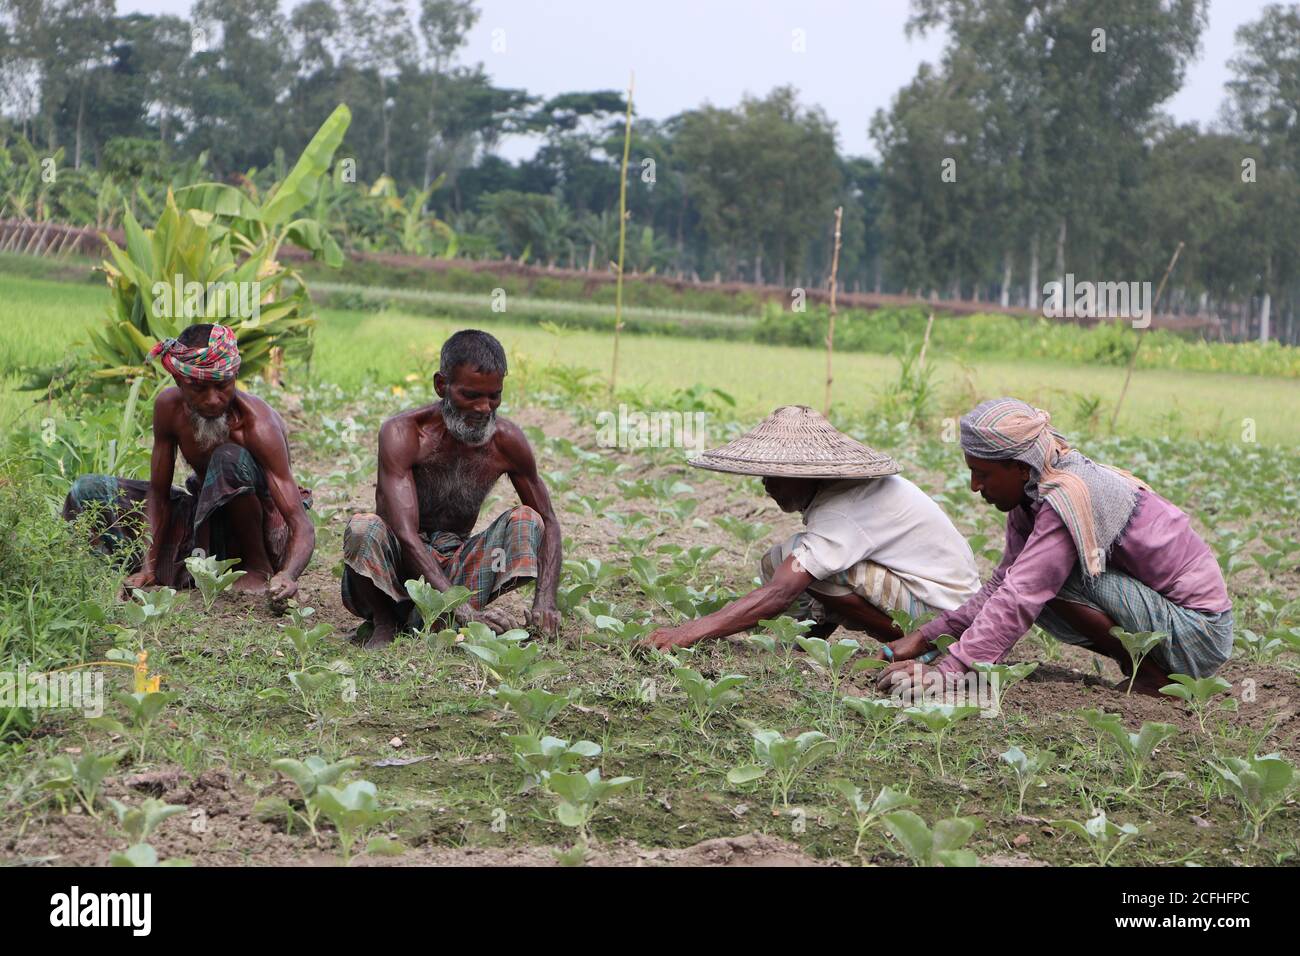 Eine Gruppe asiatischer Tagelöhner, die an einem sonnigen Tag auf einem landwirtschaftlichen Feld arbeiten (Jäten). Bauern arbeiten gemeinsam auf dem Feld Stockfoto